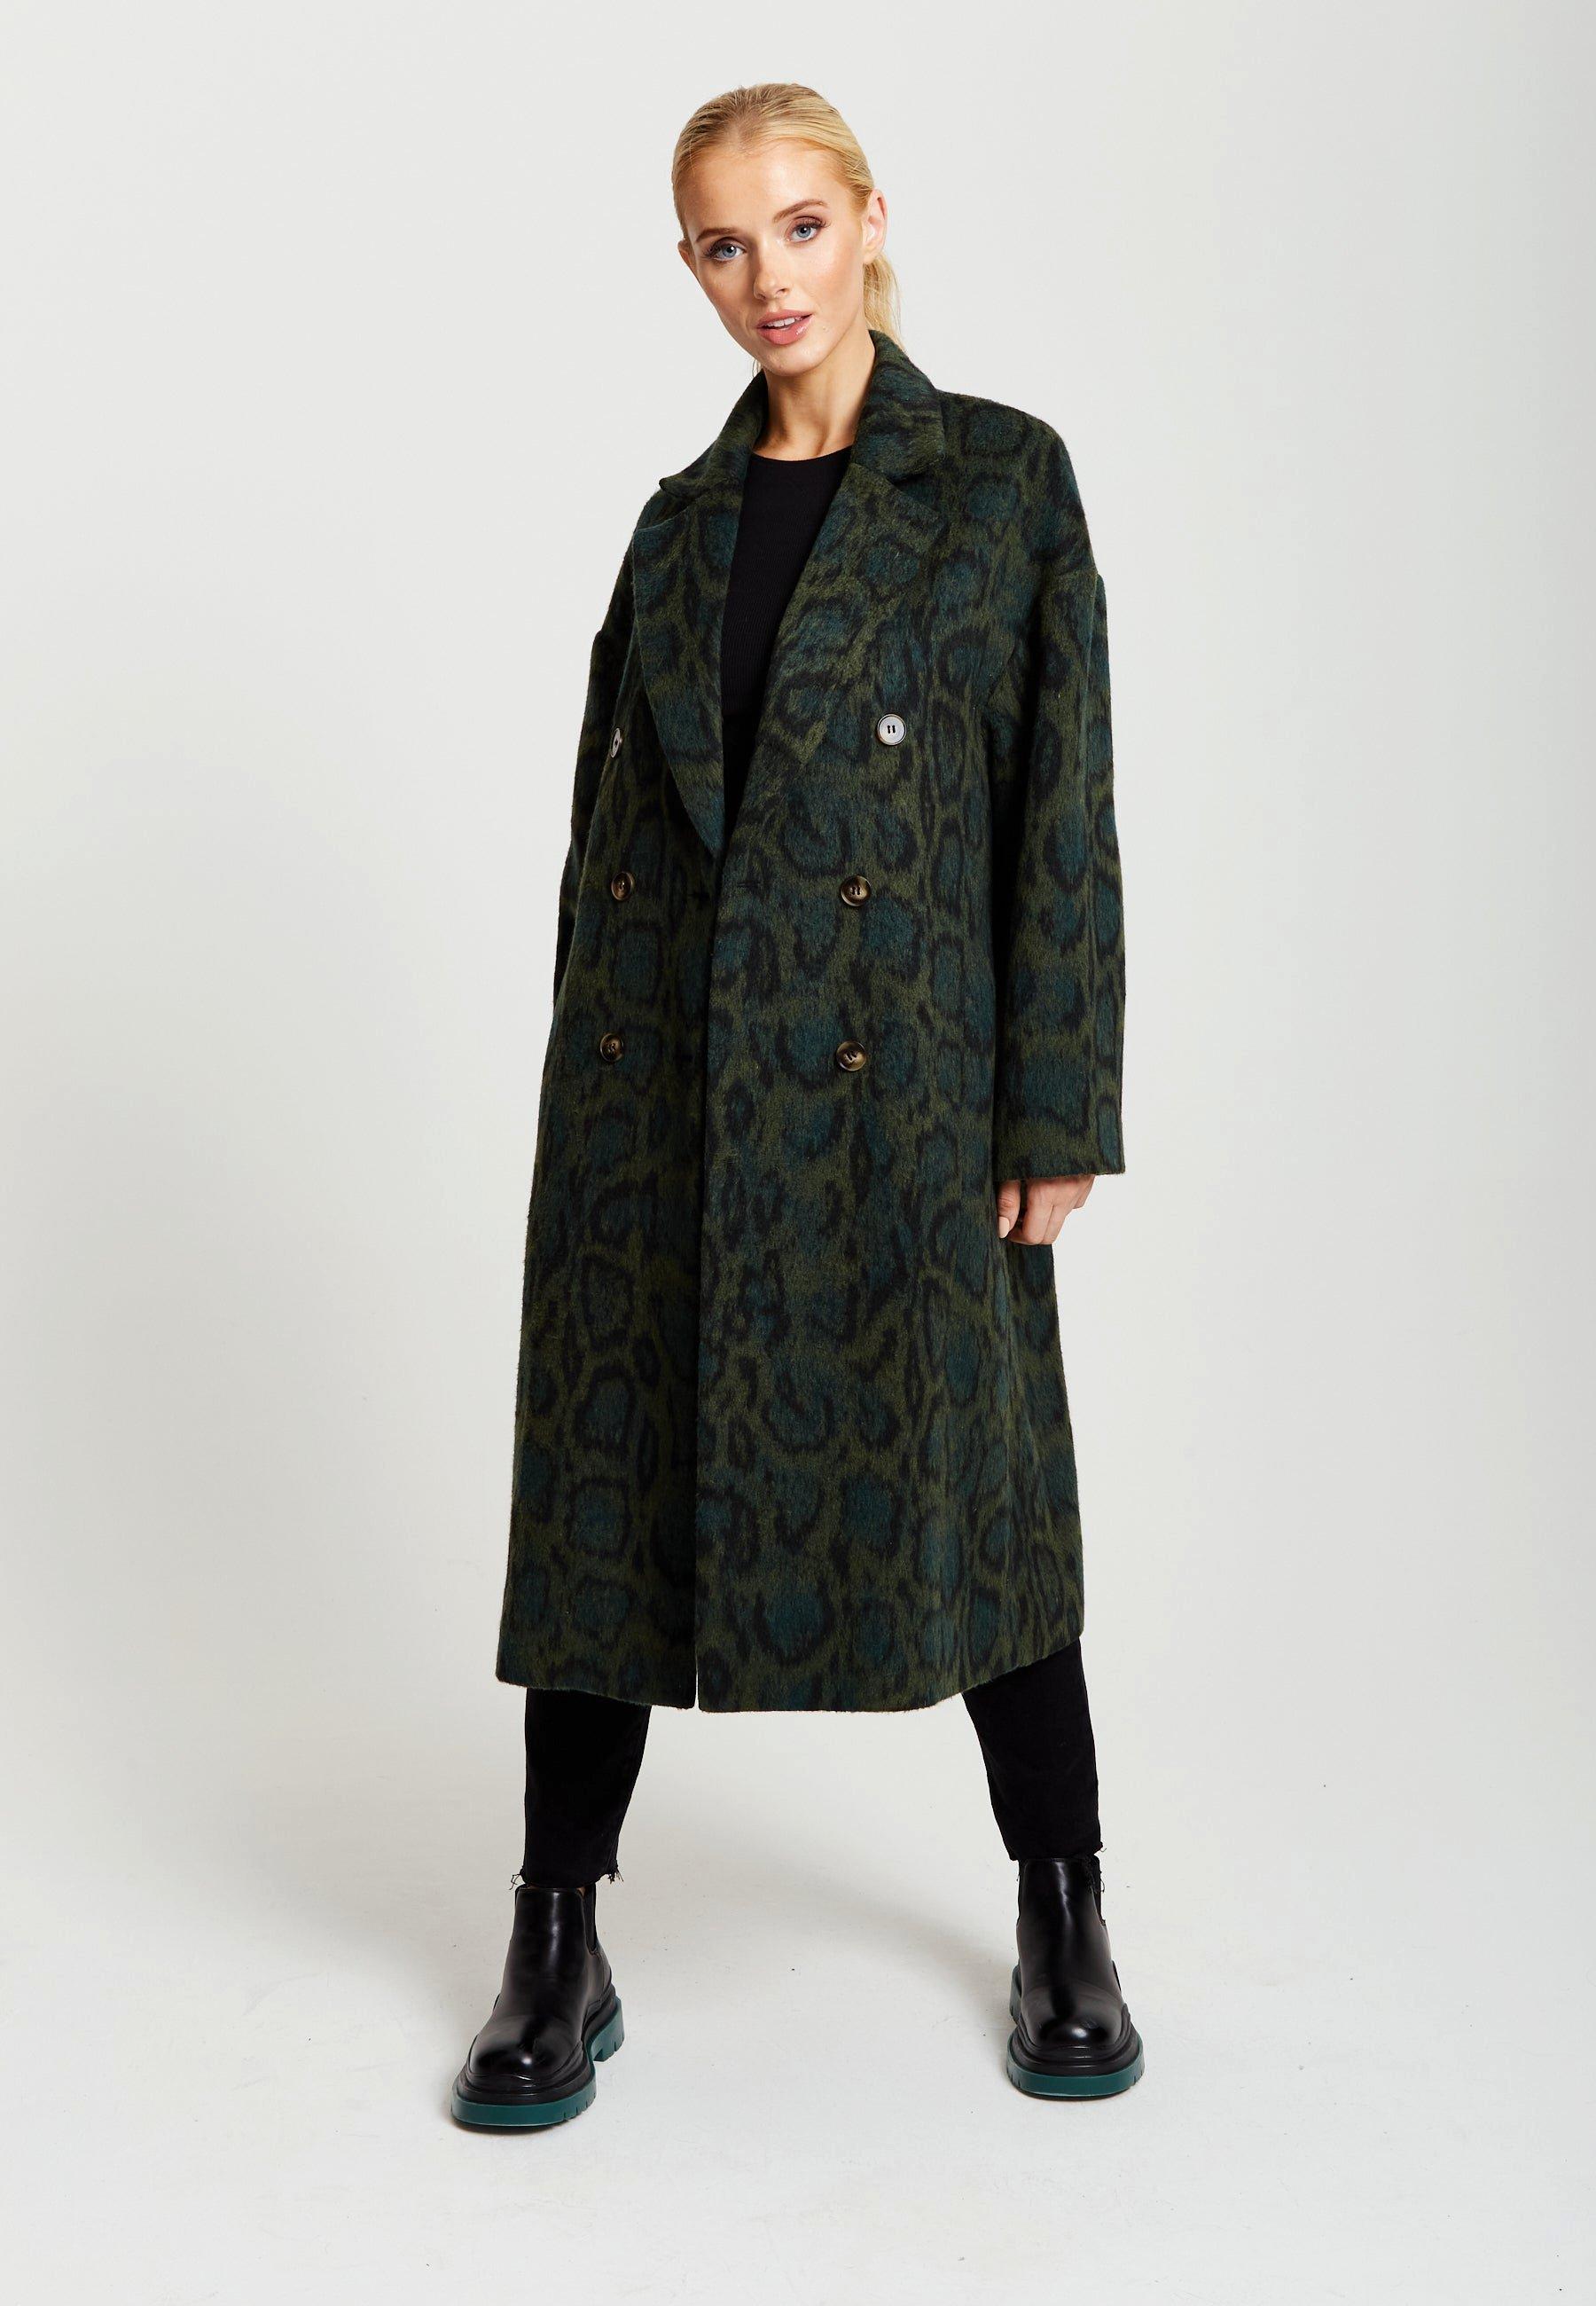 Длинное пальто цвета хаки с леопардовым принтом Liquorish, хаки пальто с леопардовым принтом